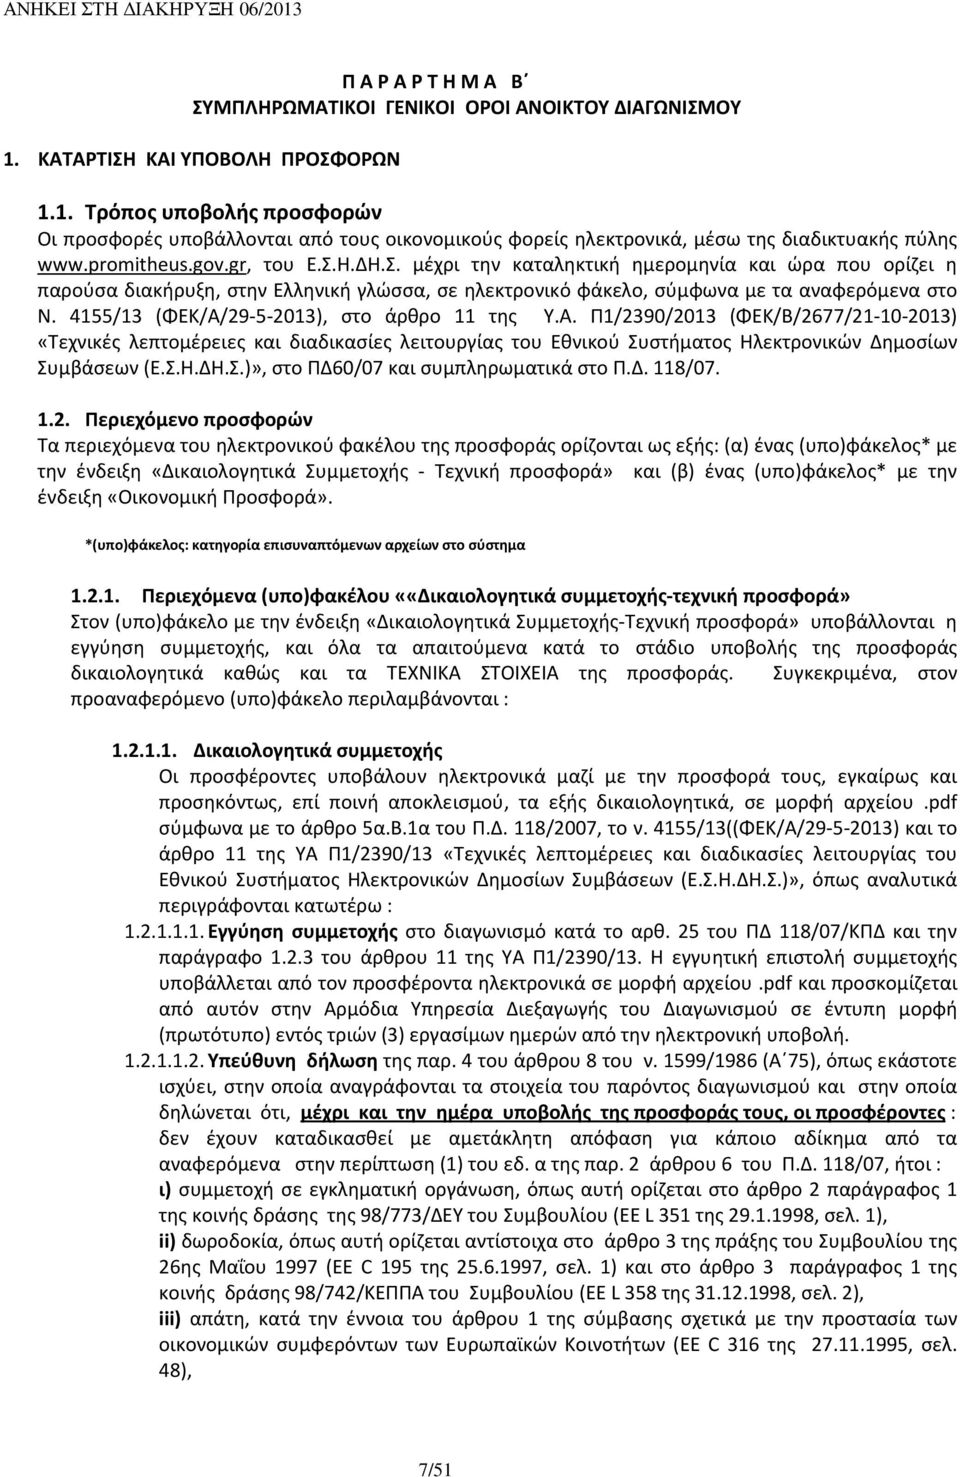 4155/13 (ΦΕΚ/Α/29-5-2013), στο άρθρο 11 της Υ.Α. Π1/2390/2013 (ΦΕΚ/Β/2677/21-10-2013) «Τεχνικές λεπτομέρειες και διαδικασίες λειτουργίας του Εθνικού Συστήματος Ηλεκτρονικών Δημοσίων Συμβάσεων (Ε.Σ.Η.ΔΗ.